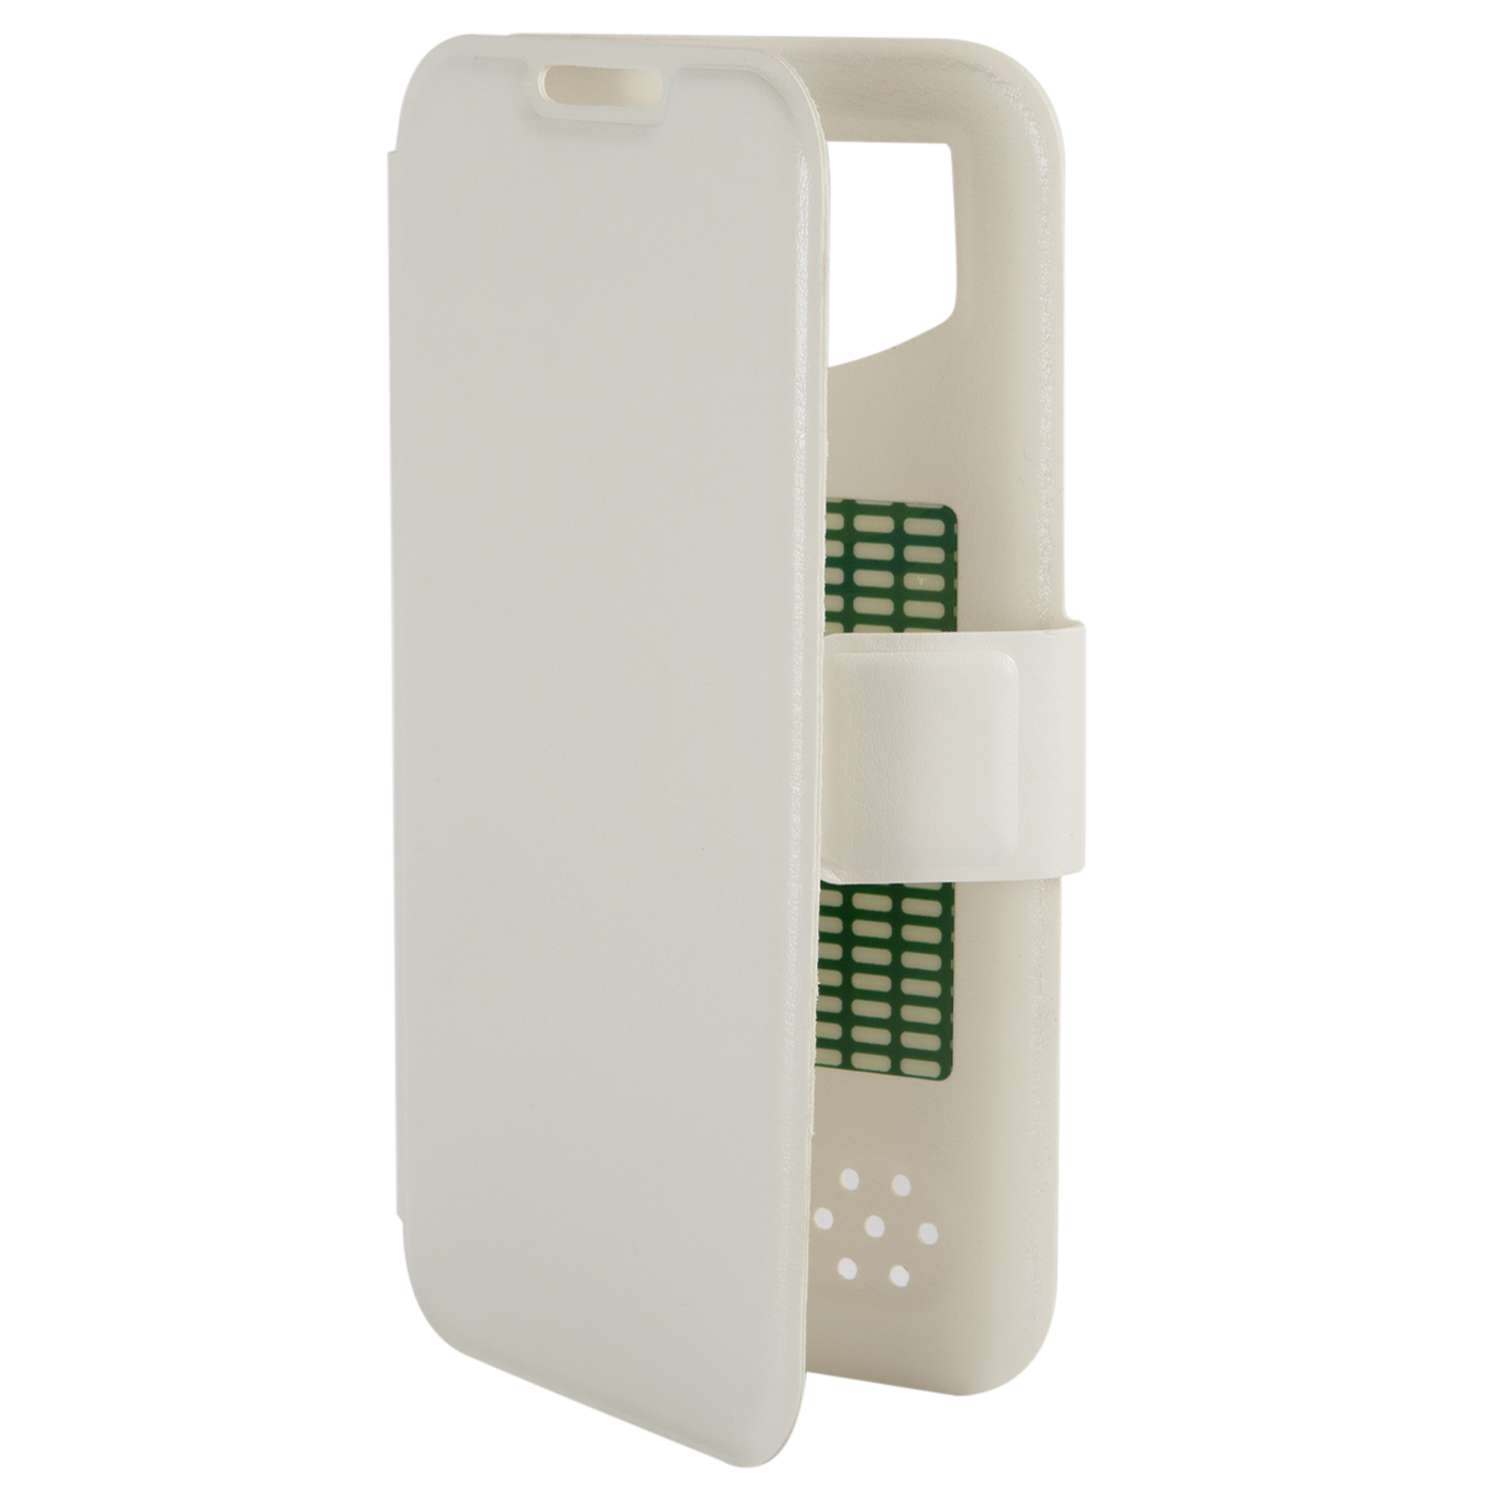 Чехол универсальный iBox Universal для телефонов 4.2-5 дюйма белый - фото 1